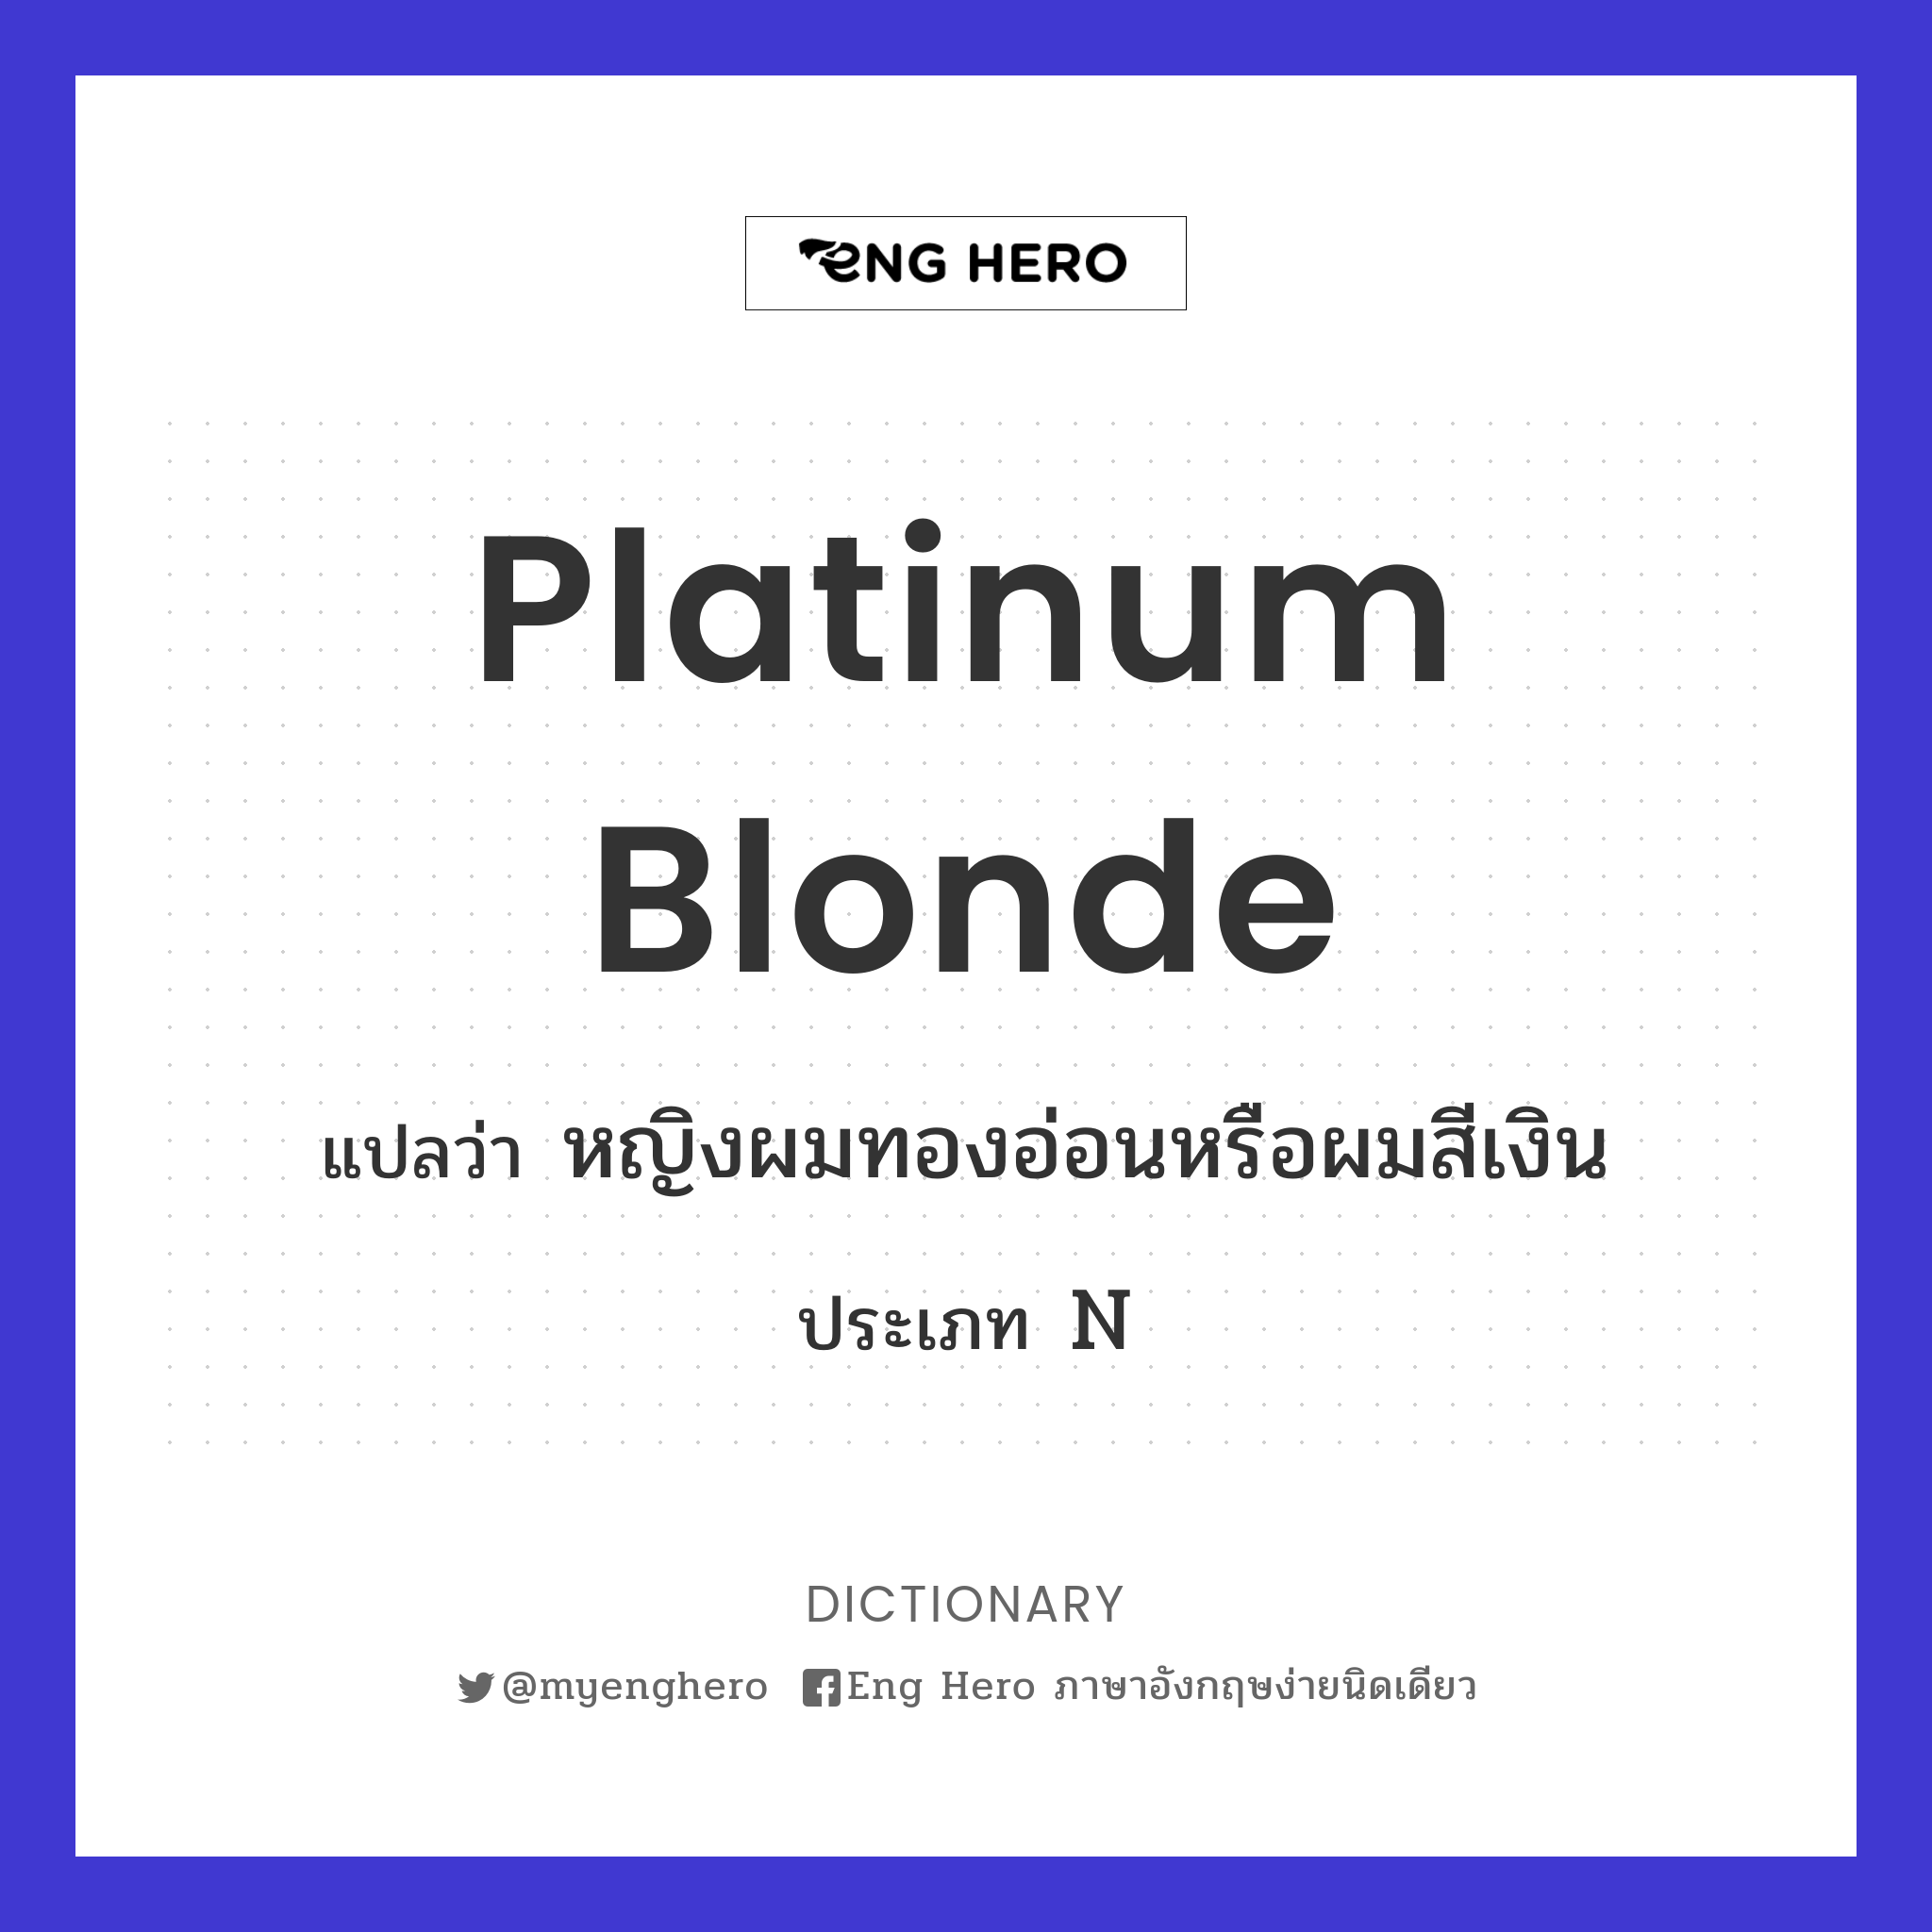 platinum blonde